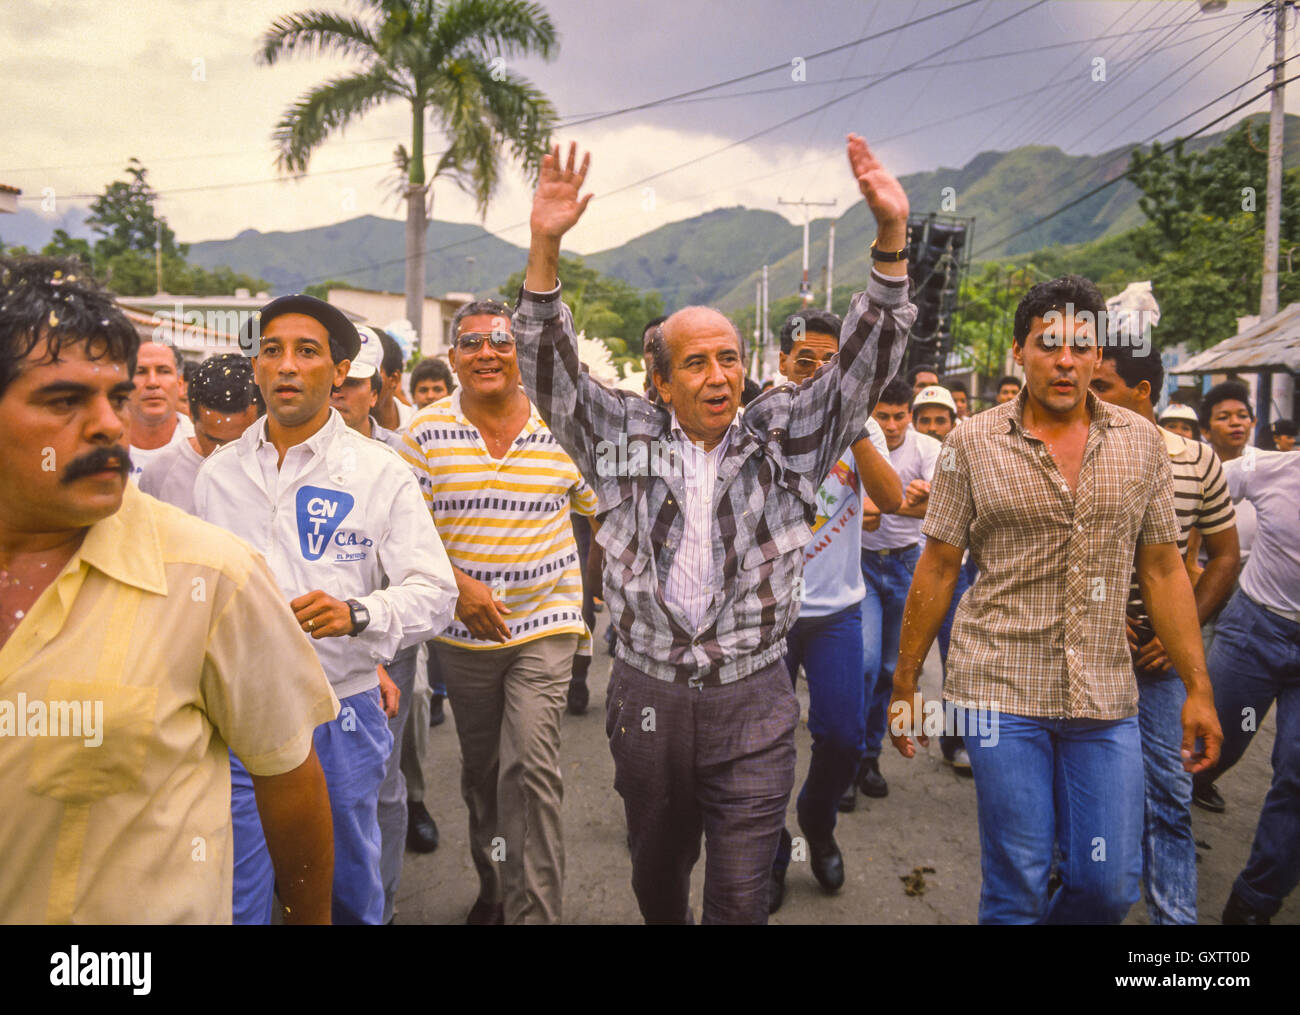 Caracas, Venezuela - candidate présidentielle Carlos Andres Perez faire campagne. Octobre 1988 Banque D'Images